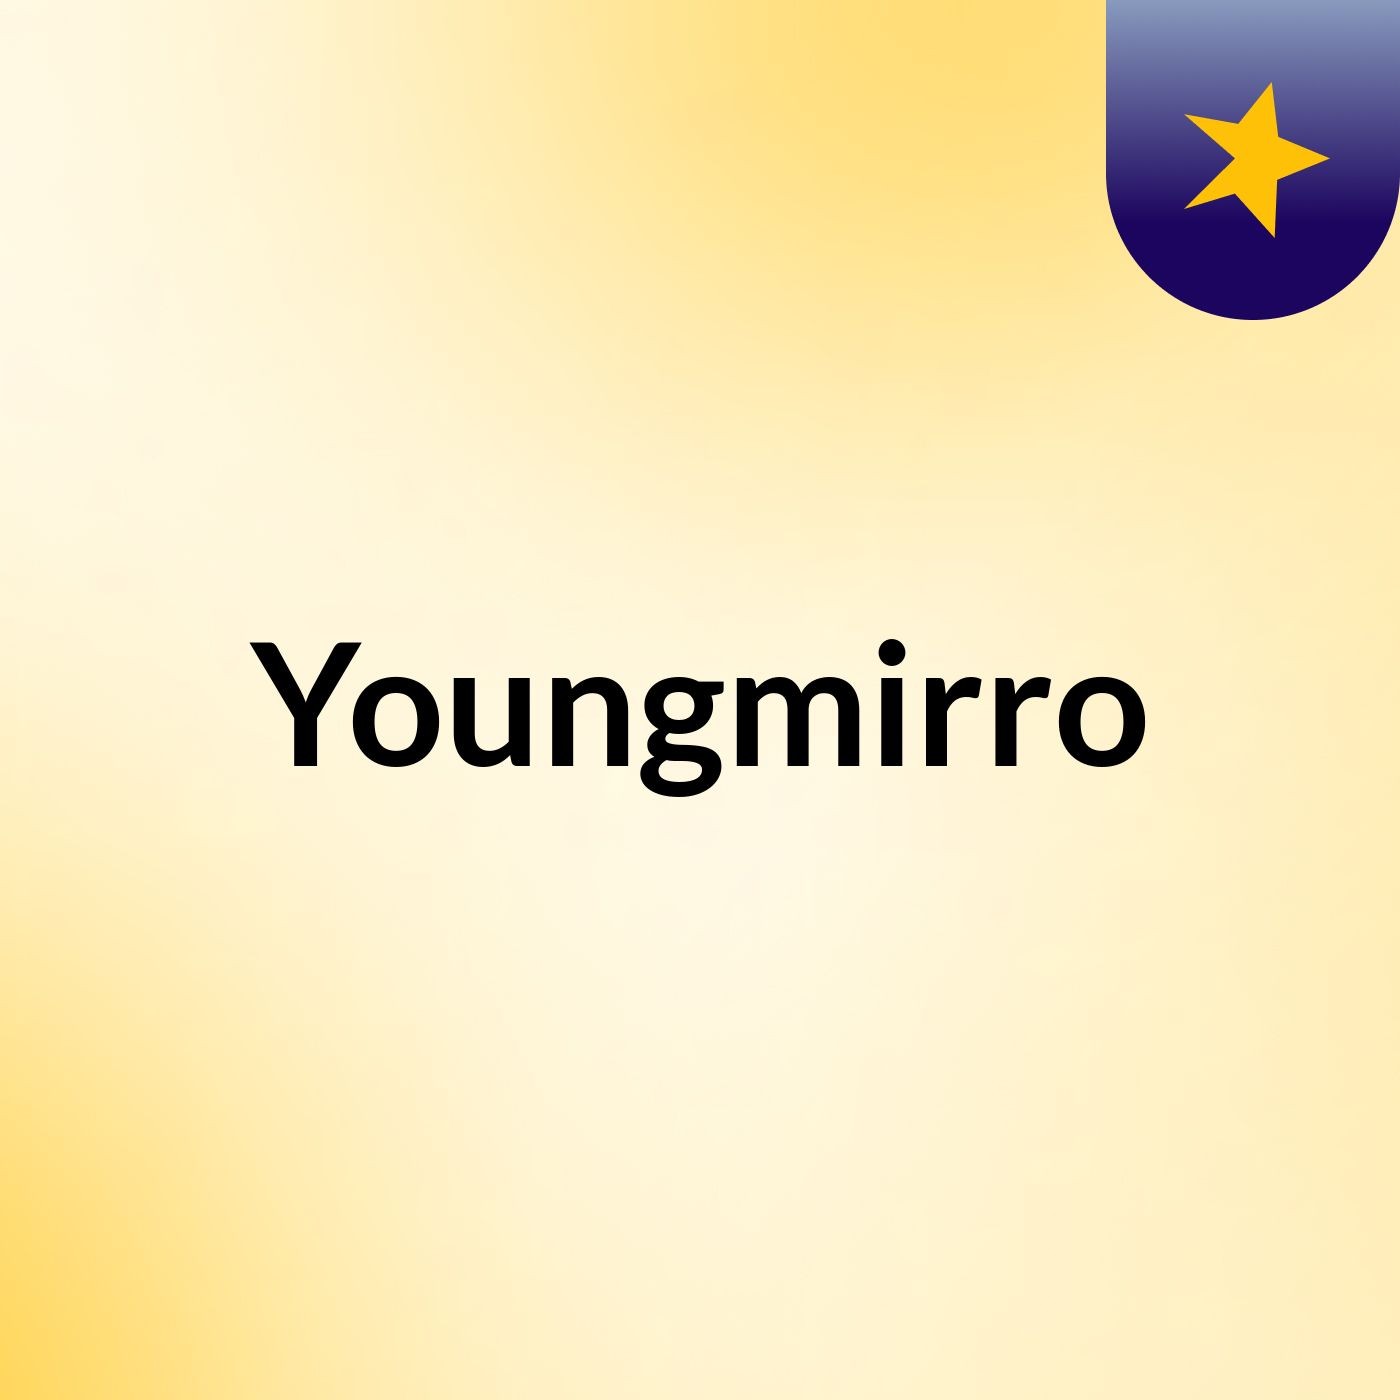 Youngmirro